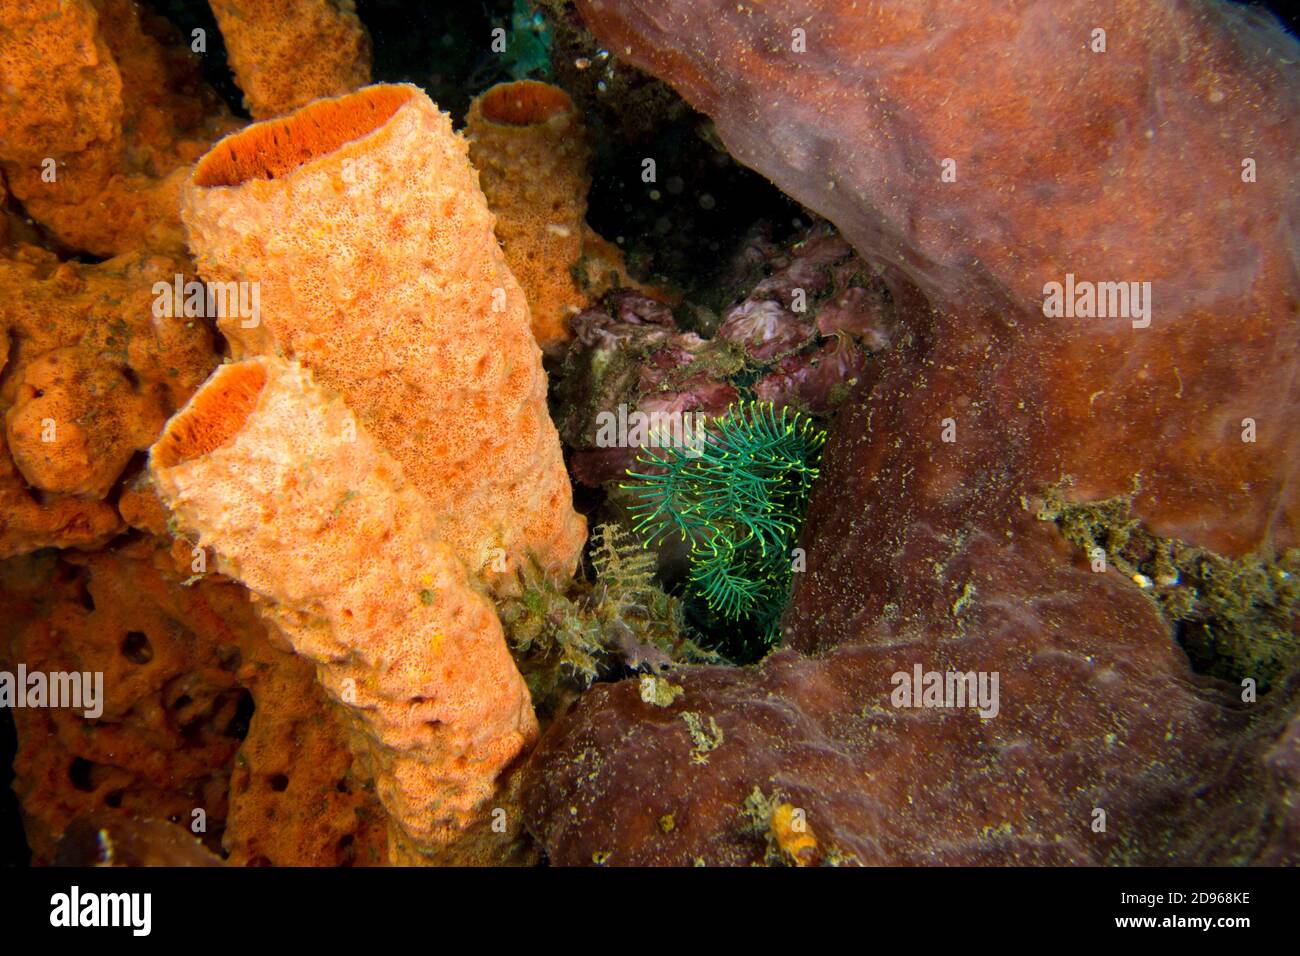 Tube Sponge, Lembeh, North Sulawesi, Indonesia, Asia. Stock Photo